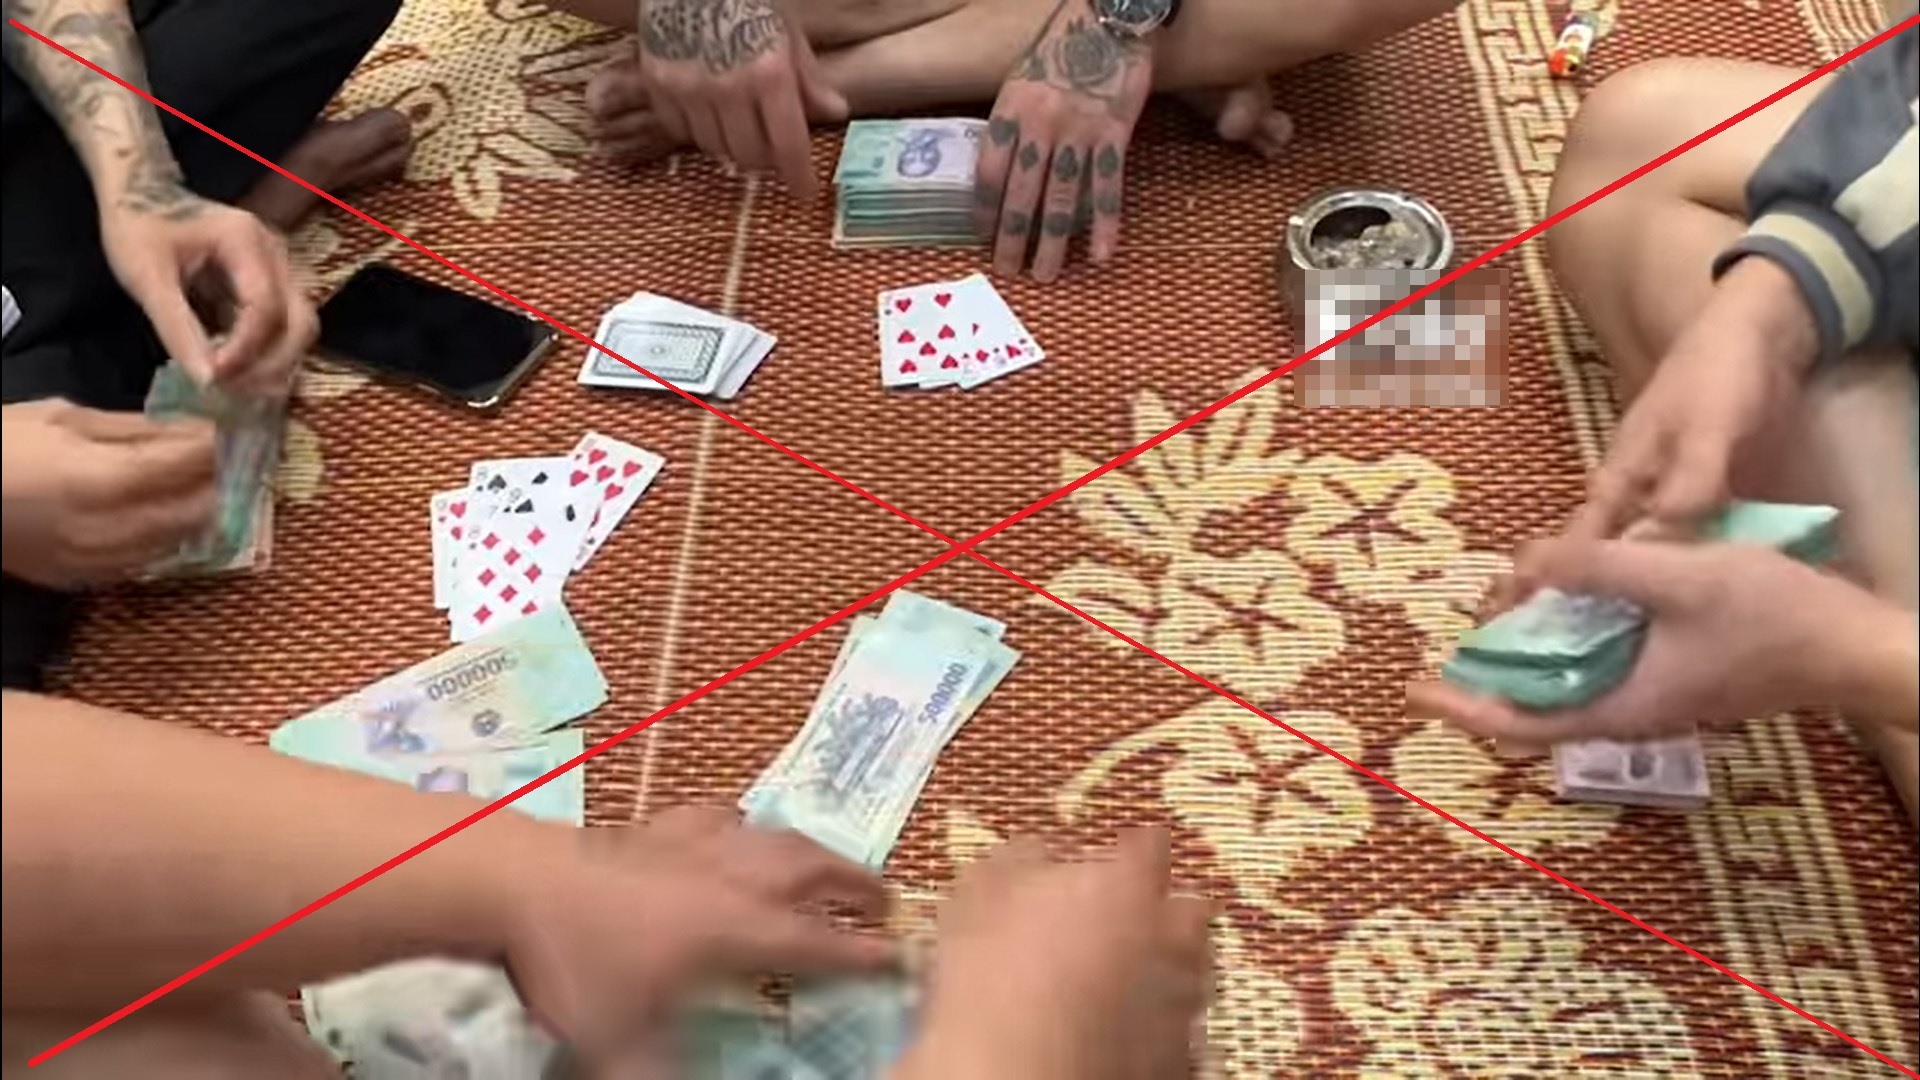 Video ghi lại cận cảnh việc đánh bạc trên Fanpage “Tiến nhất đồ bịp uy tín“. Ảnh: Chụp màn hình